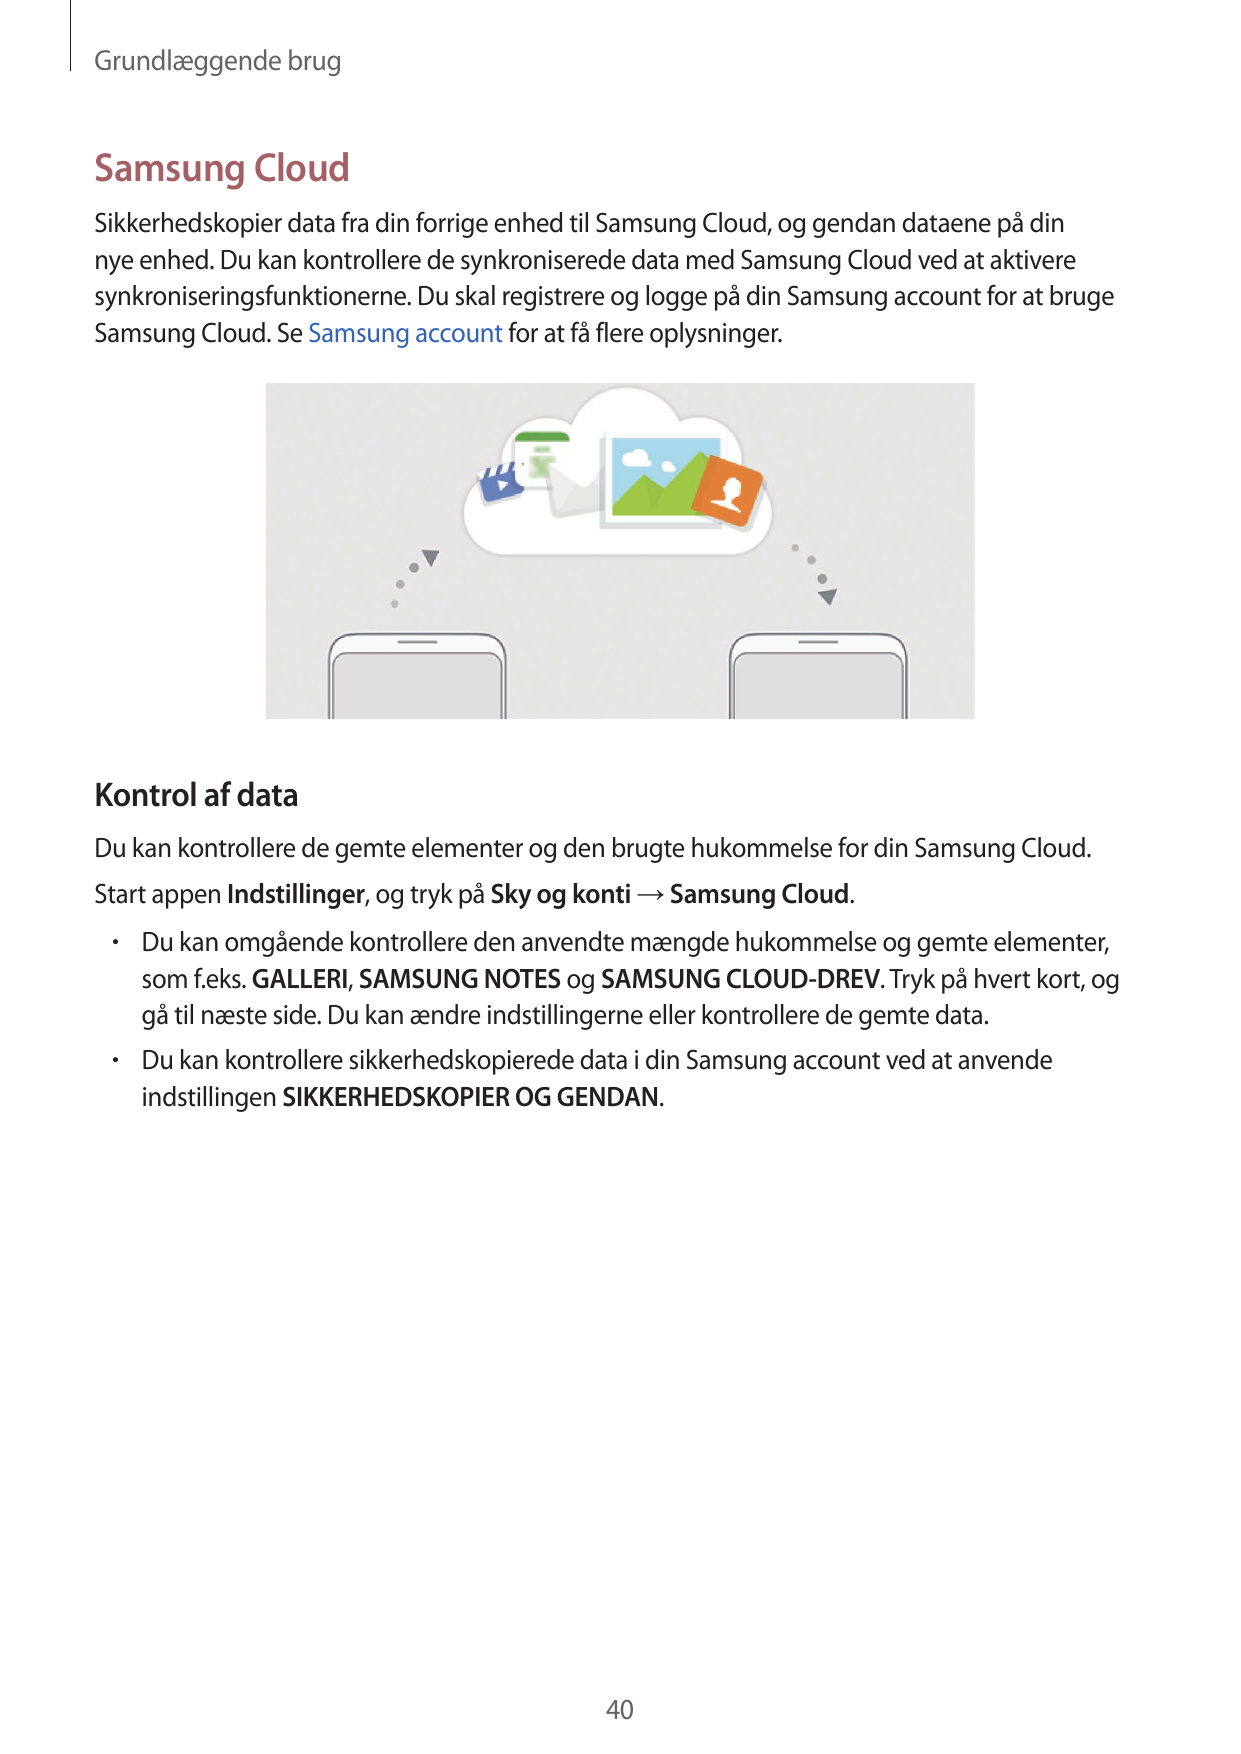 Grundlæggende brugSamsung CloudSikkerhedskopier data fra din forrige enhed til Samsung Cloud, og gendan dataene på dinnye enhed.